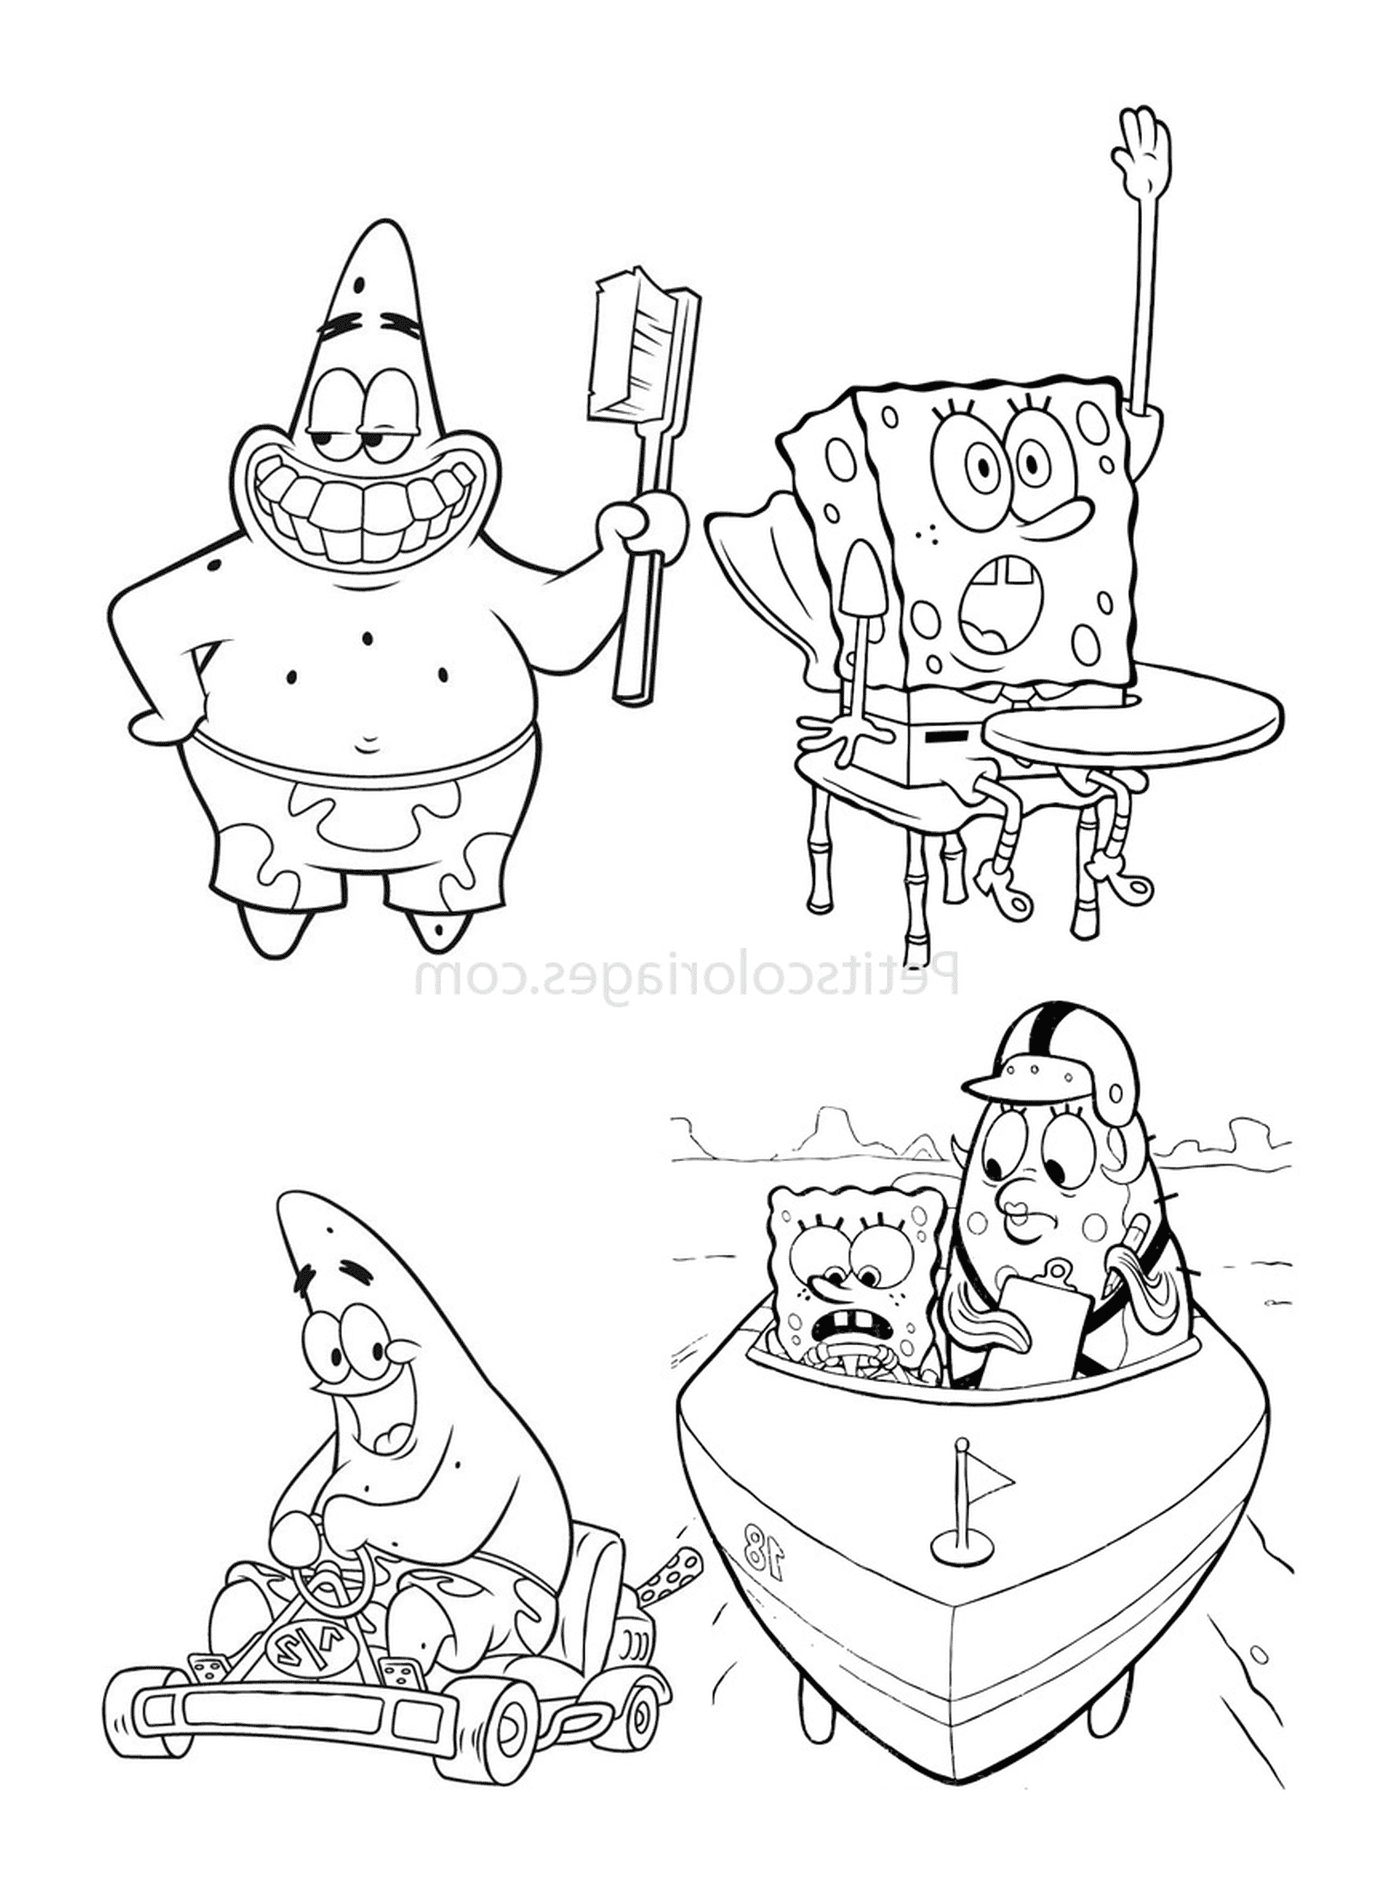  Ein Satz von vier Bildern von SpongeBob und Patrick 